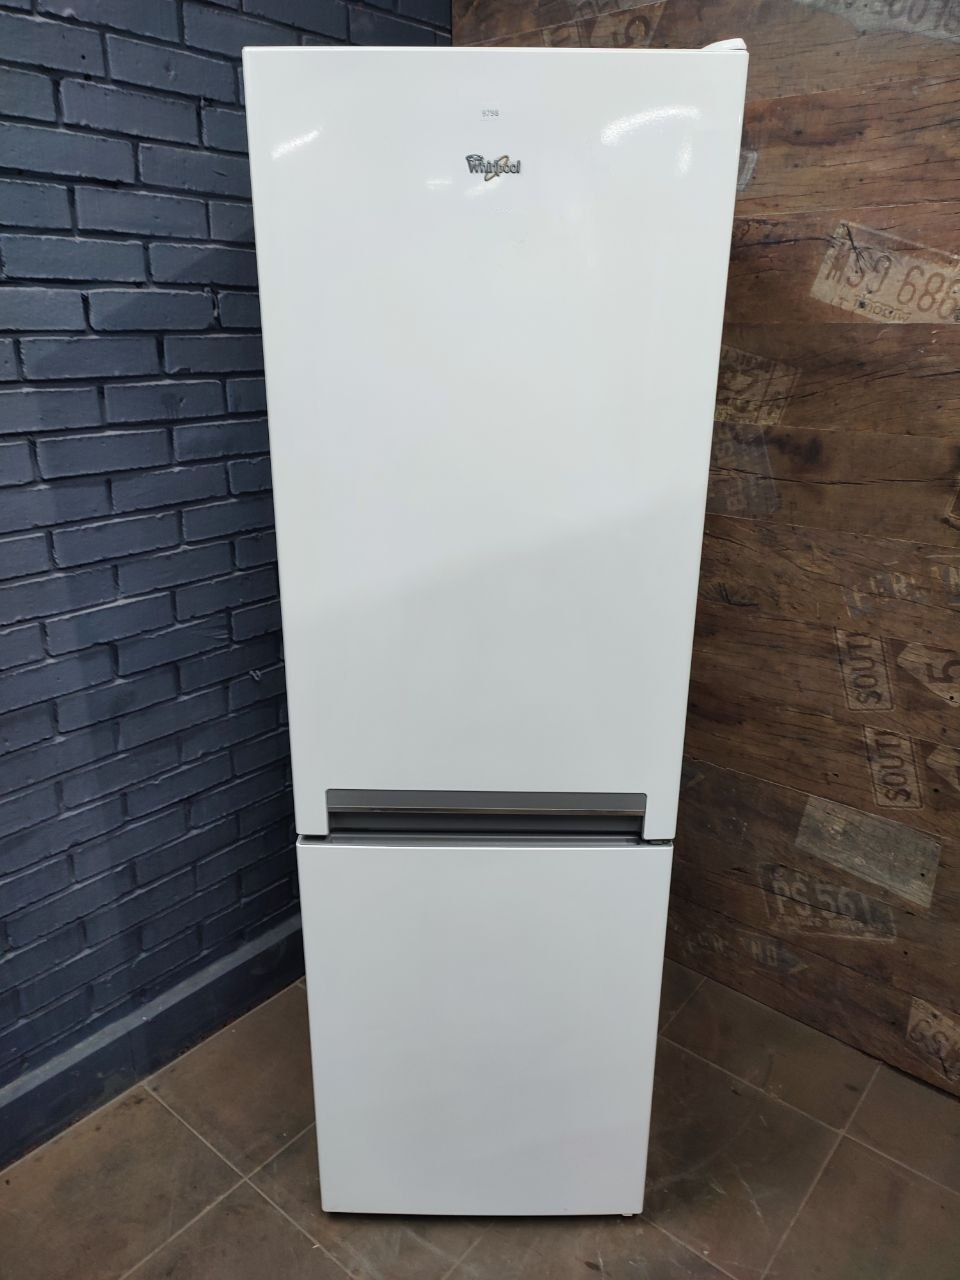 Холодильник Siemens S4795fv з Європи.Доставка в квартиру.Гарантія.